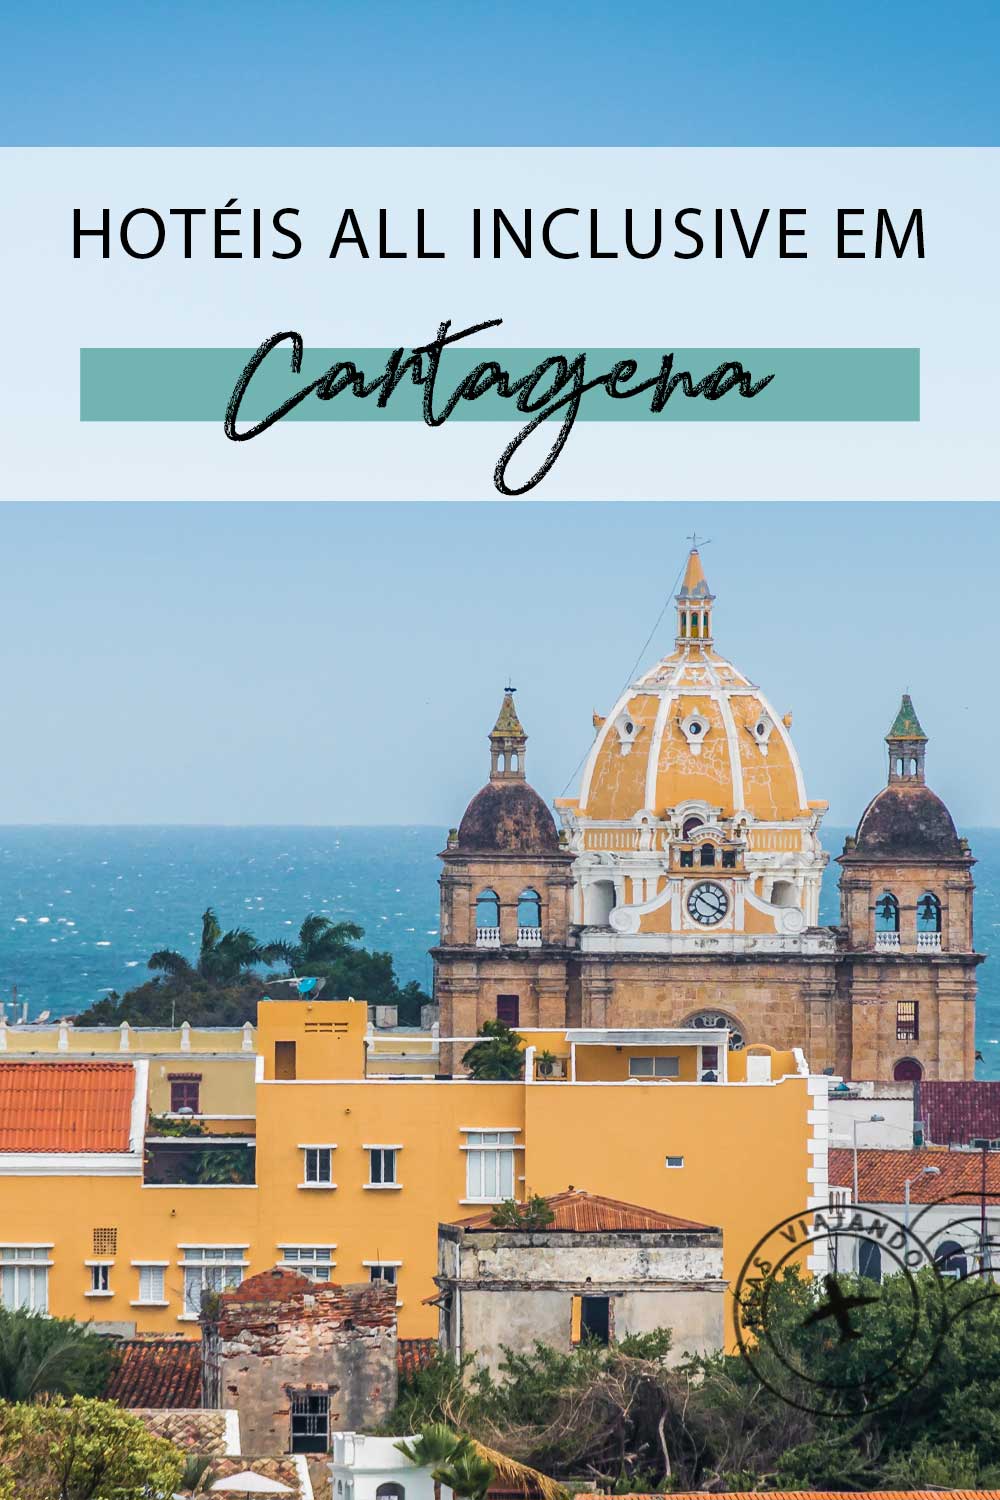 Pin para salvar, do post de Hotéis all inclusive  em Cartagena na Colômbia